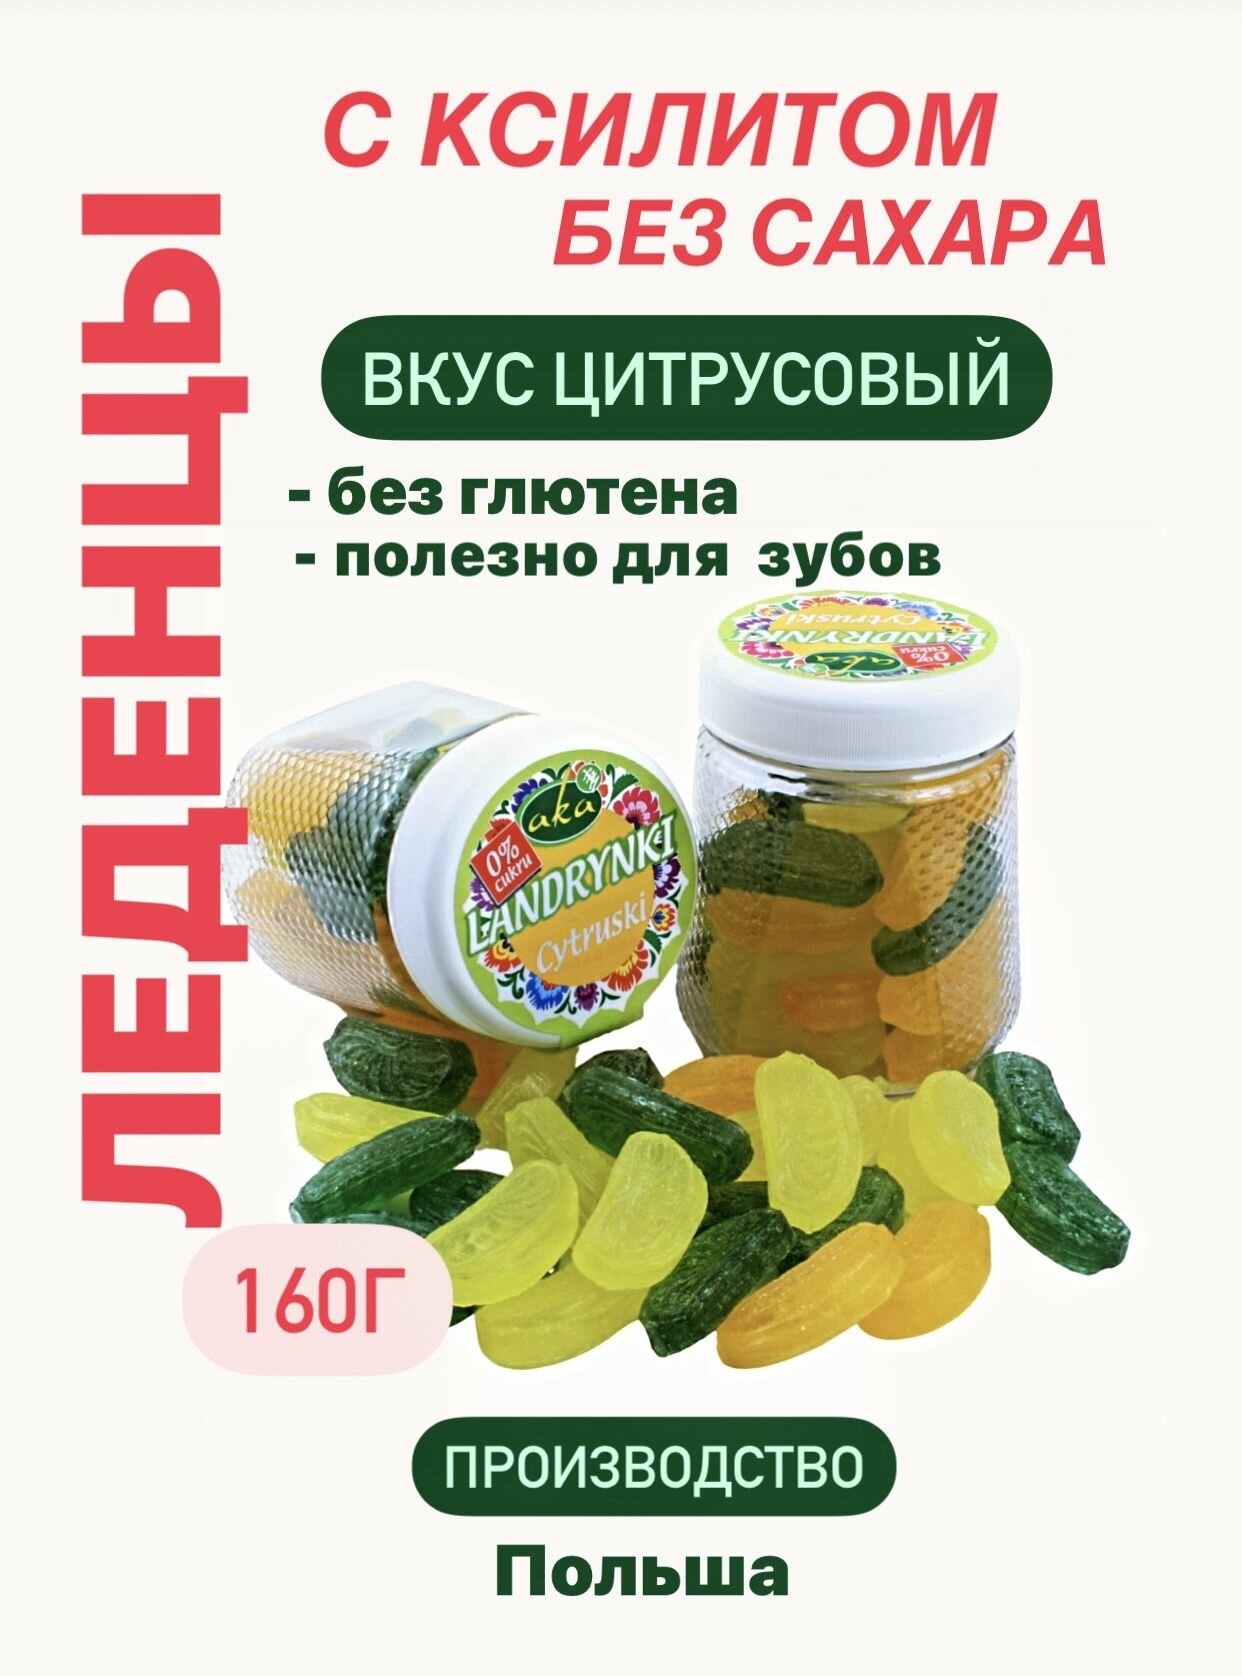 Леденцы фруктовые без сахара на ксилите вкус Цитрусовый, 1 шт.- 160 г, Польша